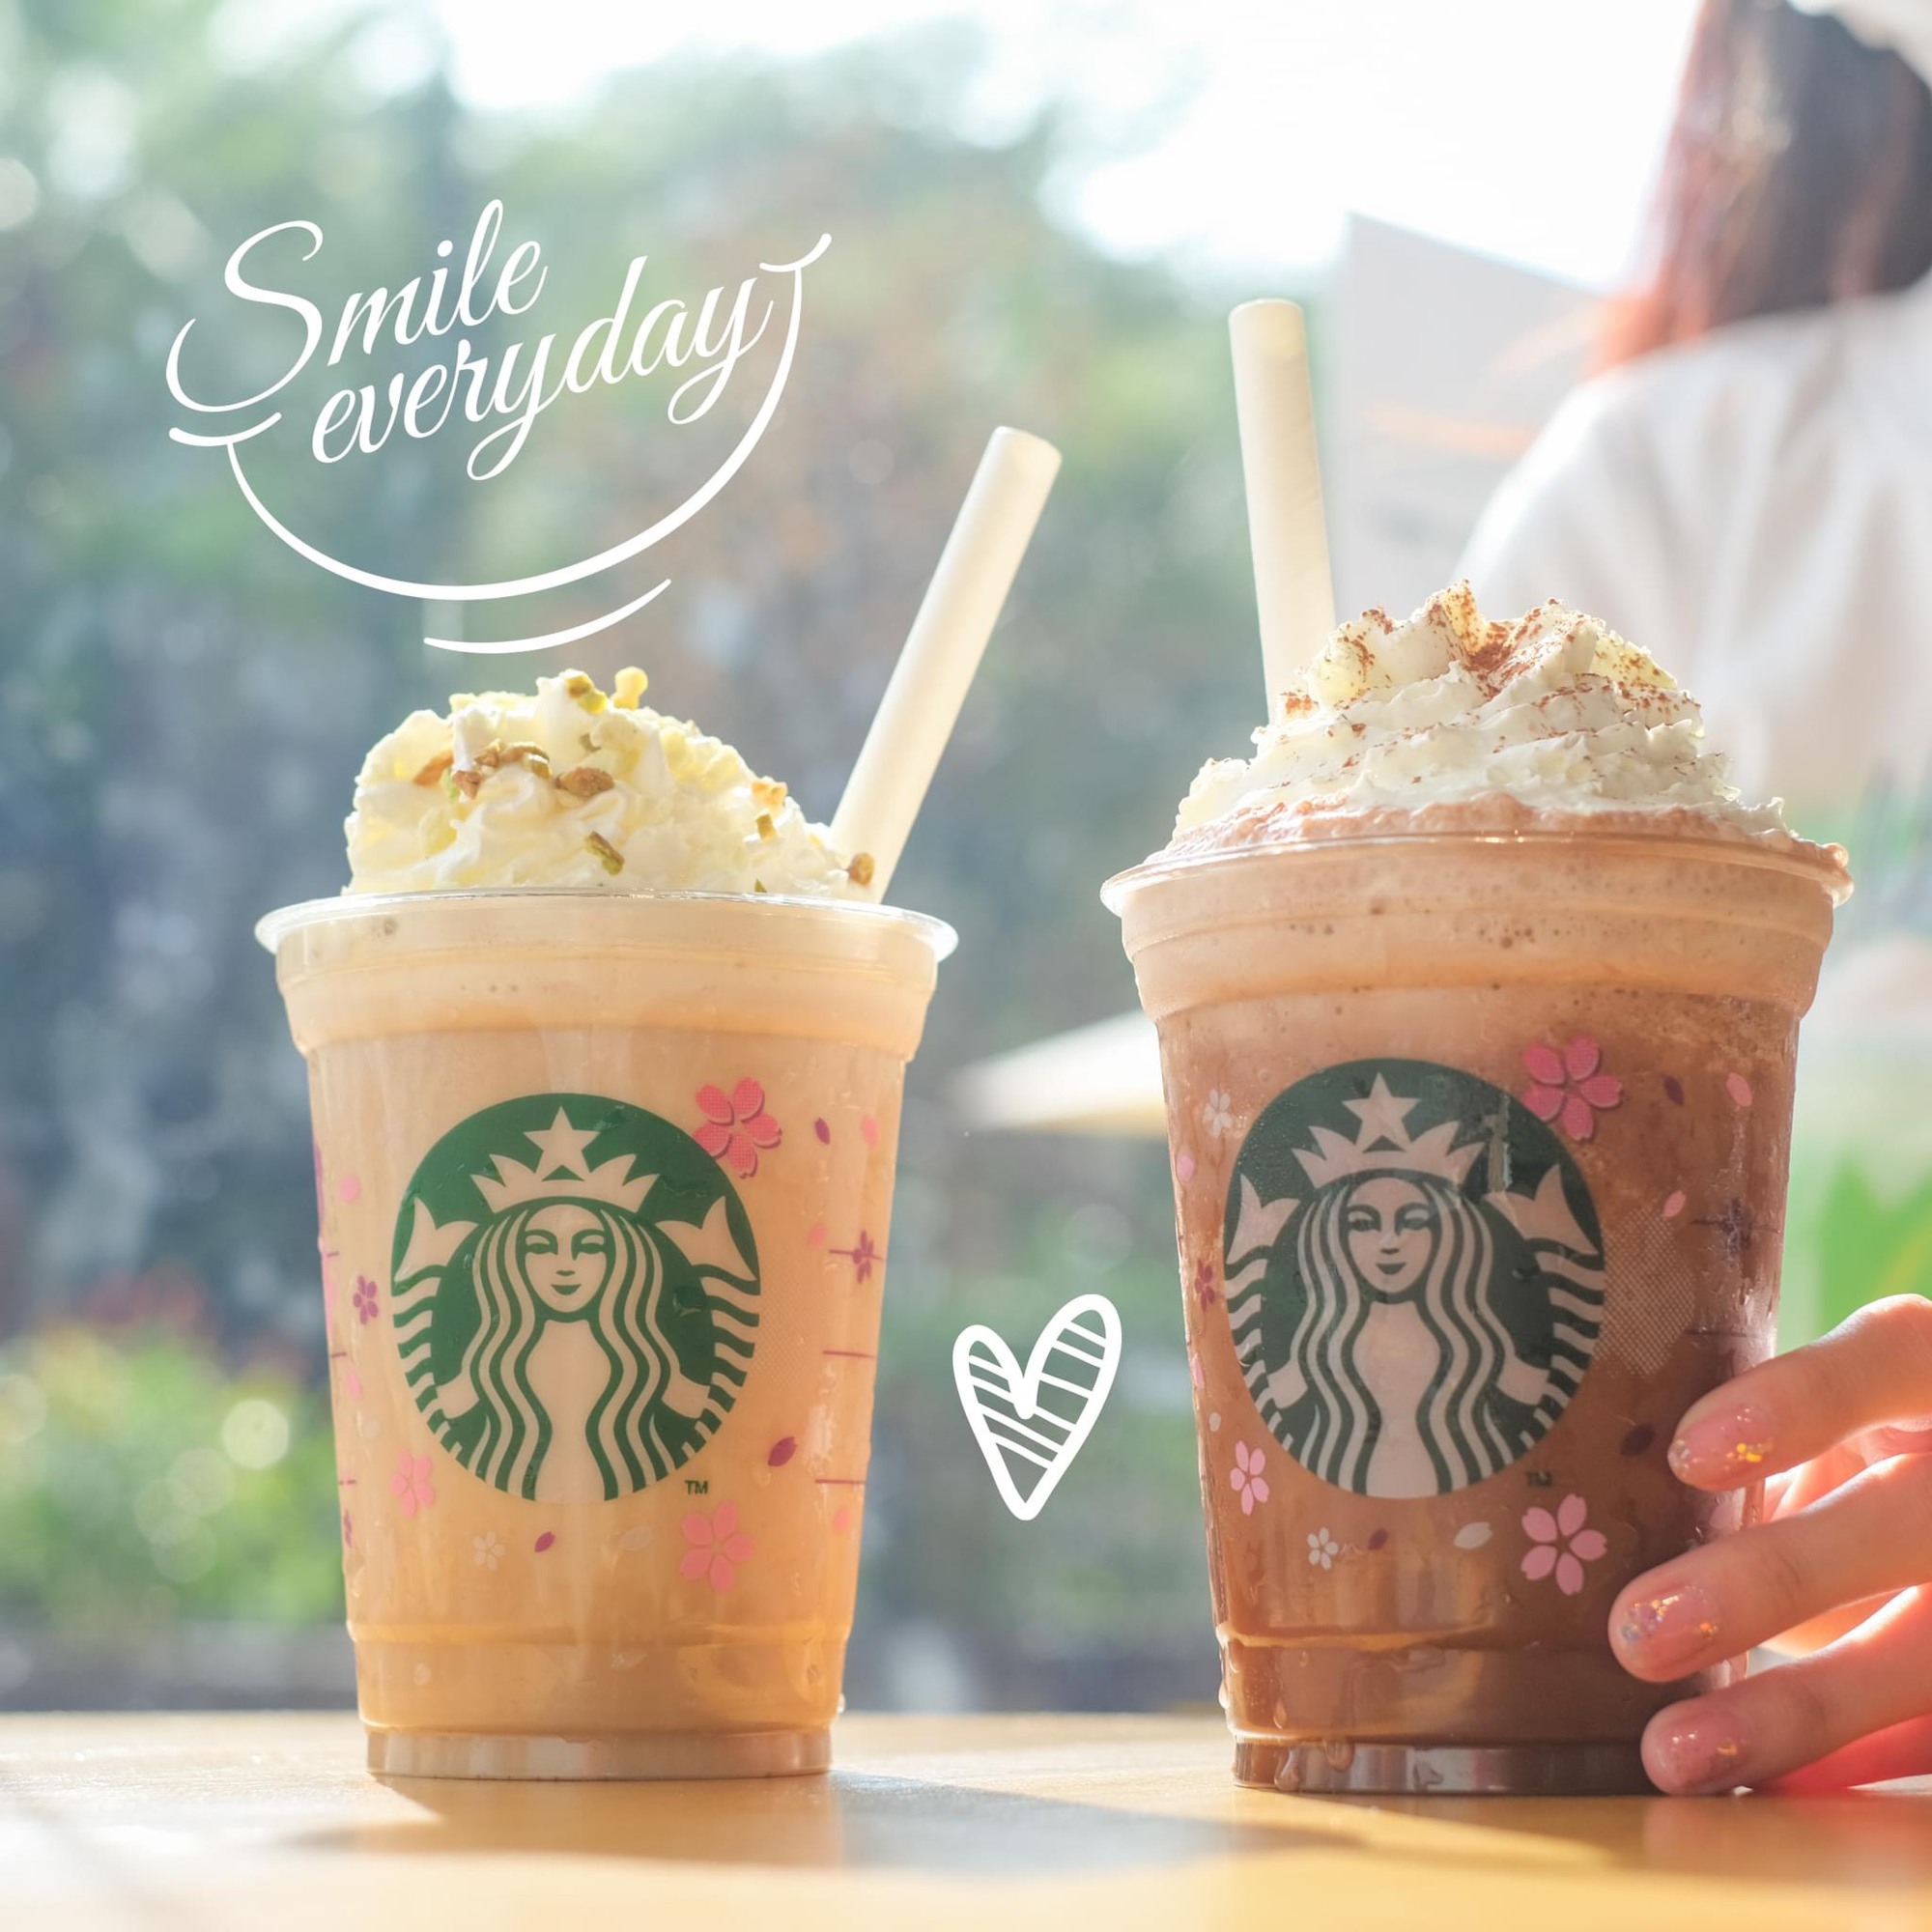 Nóng nhất lúc này không phải trời hè 38 độ, mà là bộ đôi ưu đãi kép từ Starbucks trên ShopeeFood - Ảnh 1.